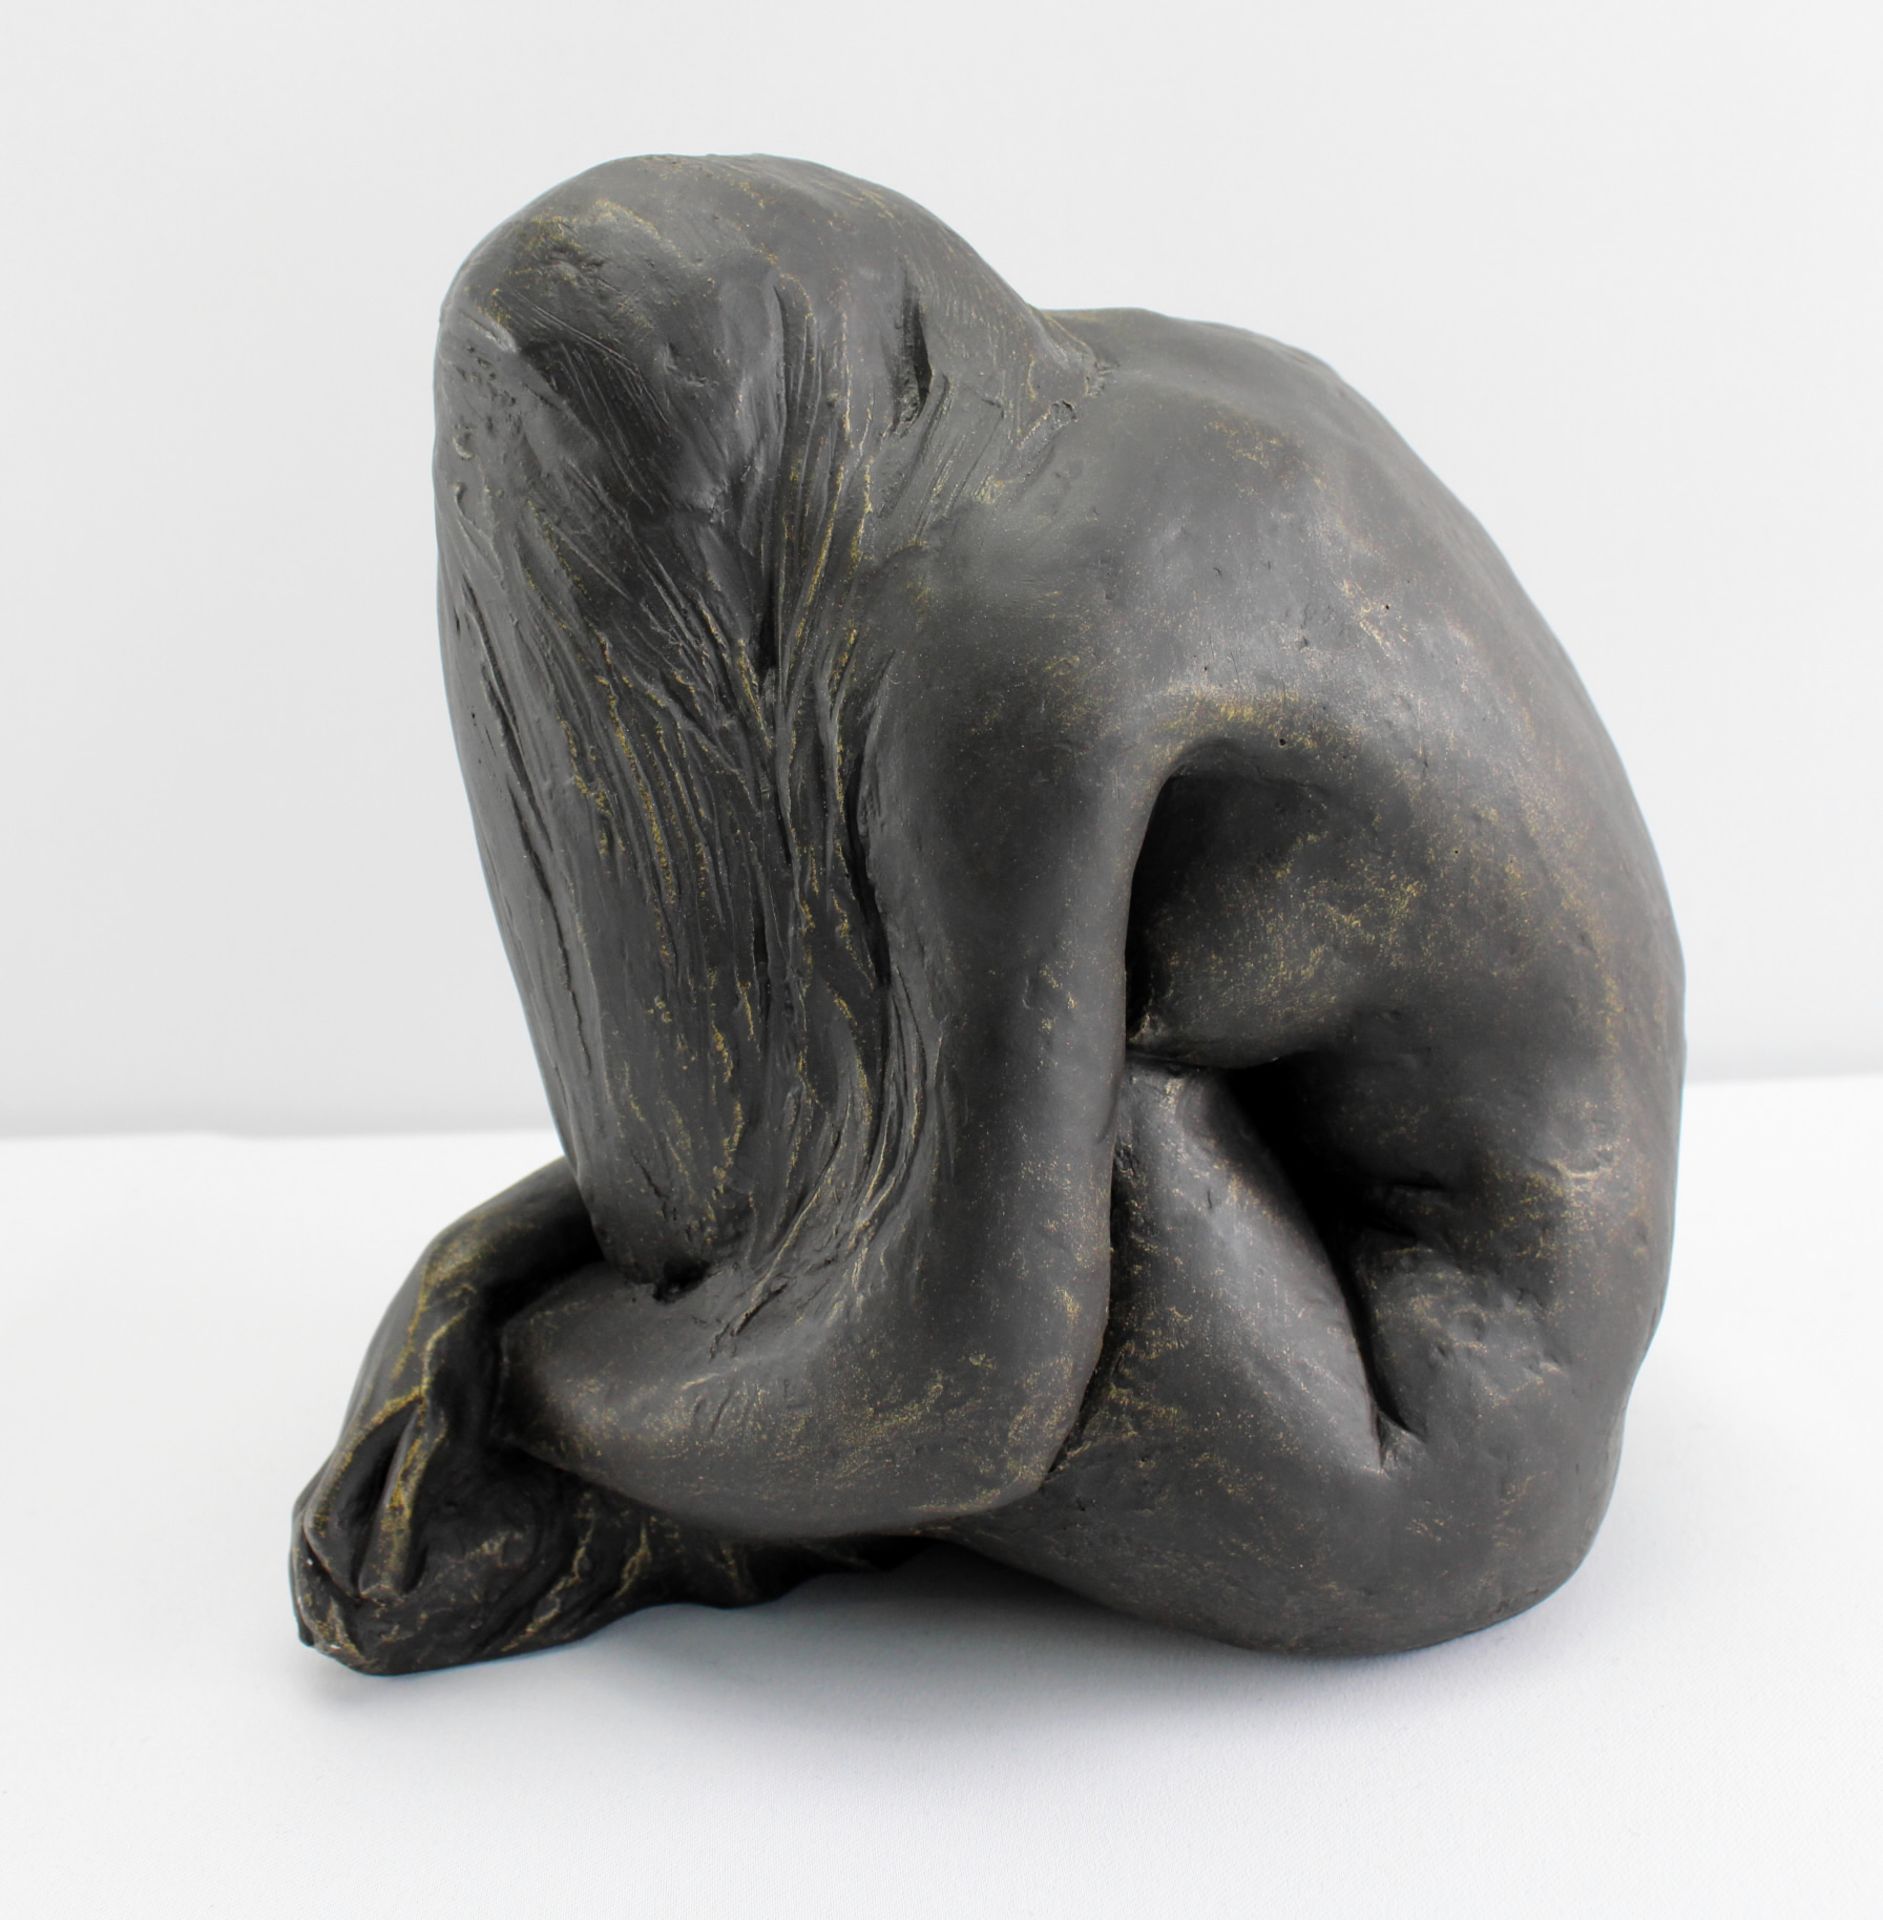 Skulptur "Sitzender weiblicher Akt" Kunstguss bronziert, Höhe 21 cm - Image 3 of 5